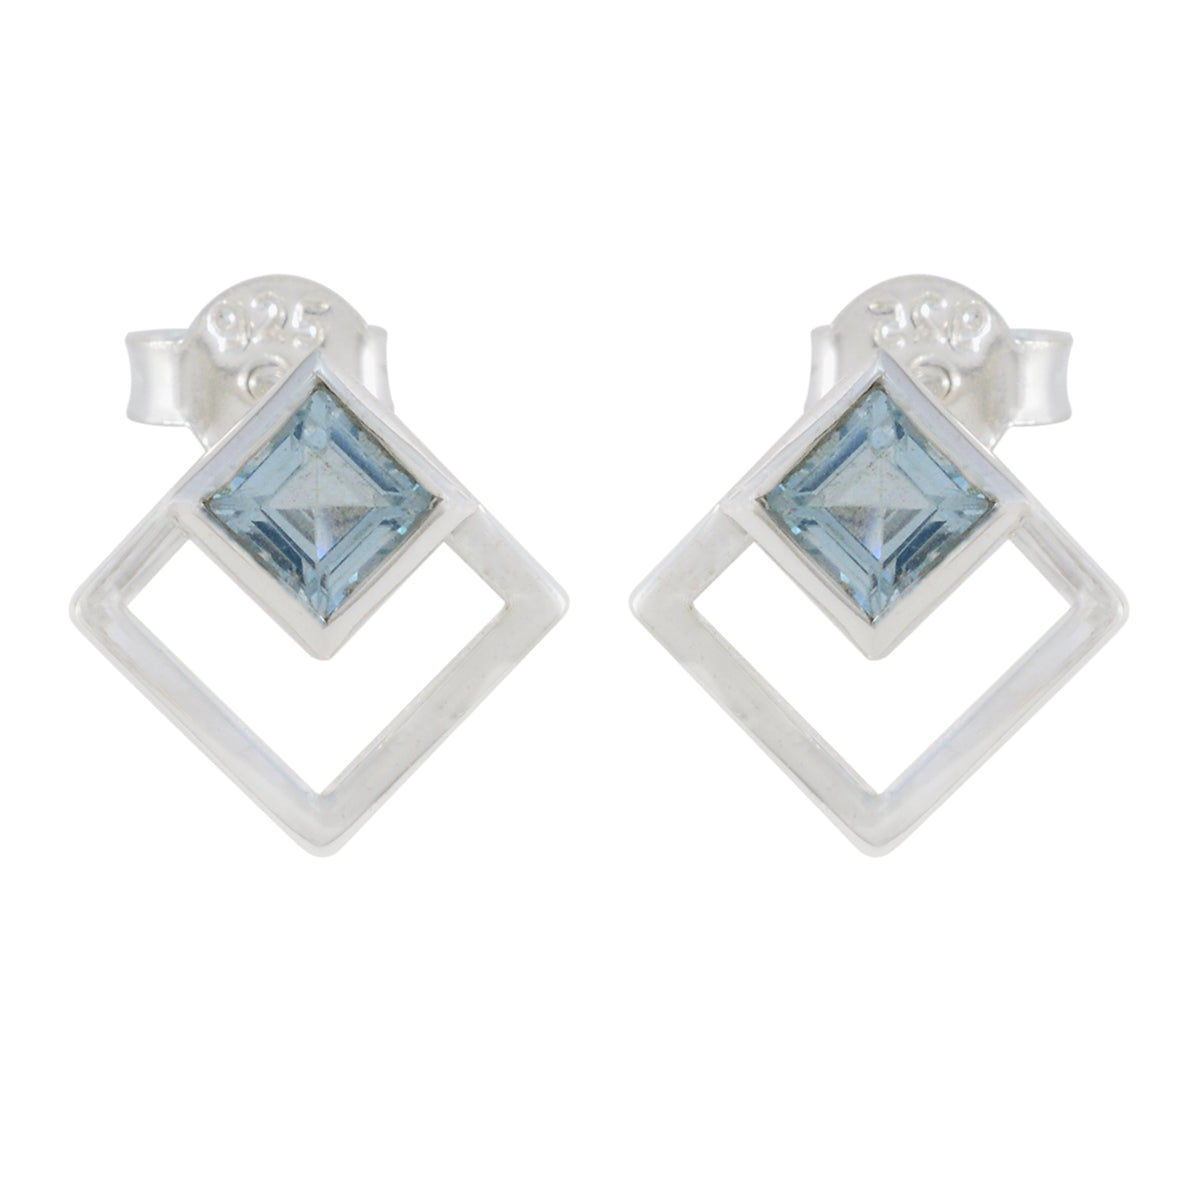 Riyo Fanciable Sterling Silver Earring For Demoiselle Blue Topaz Earring Bezel Setting Blue Earring Stud Earring